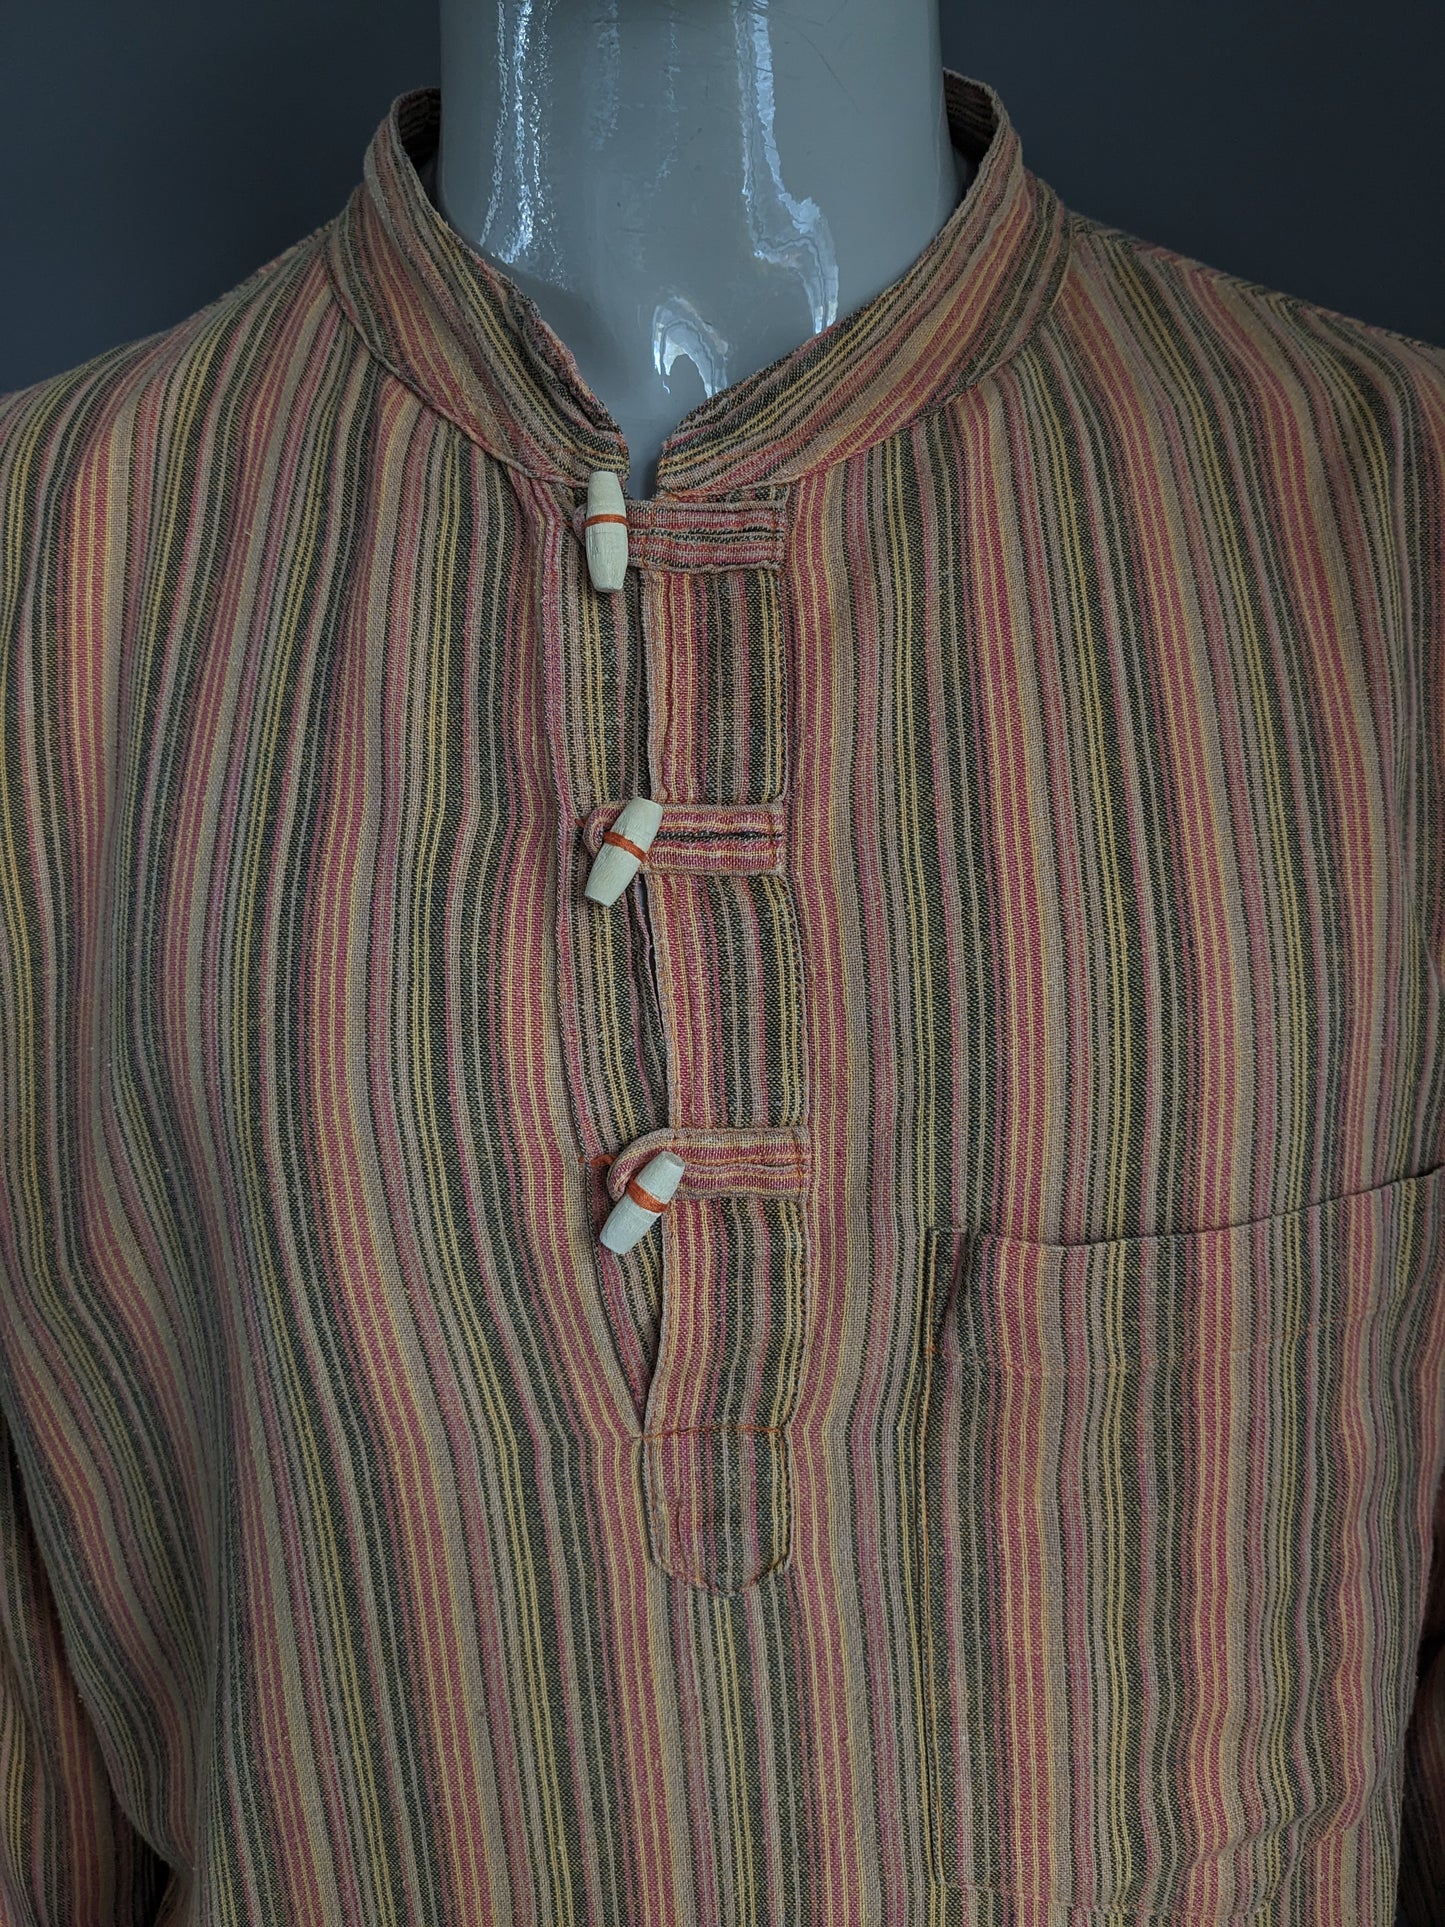 Chemise de chemise Coline vintage avec mao / agriculteur / col debout. Orange rouge jaune noir rayé. Taille xl.